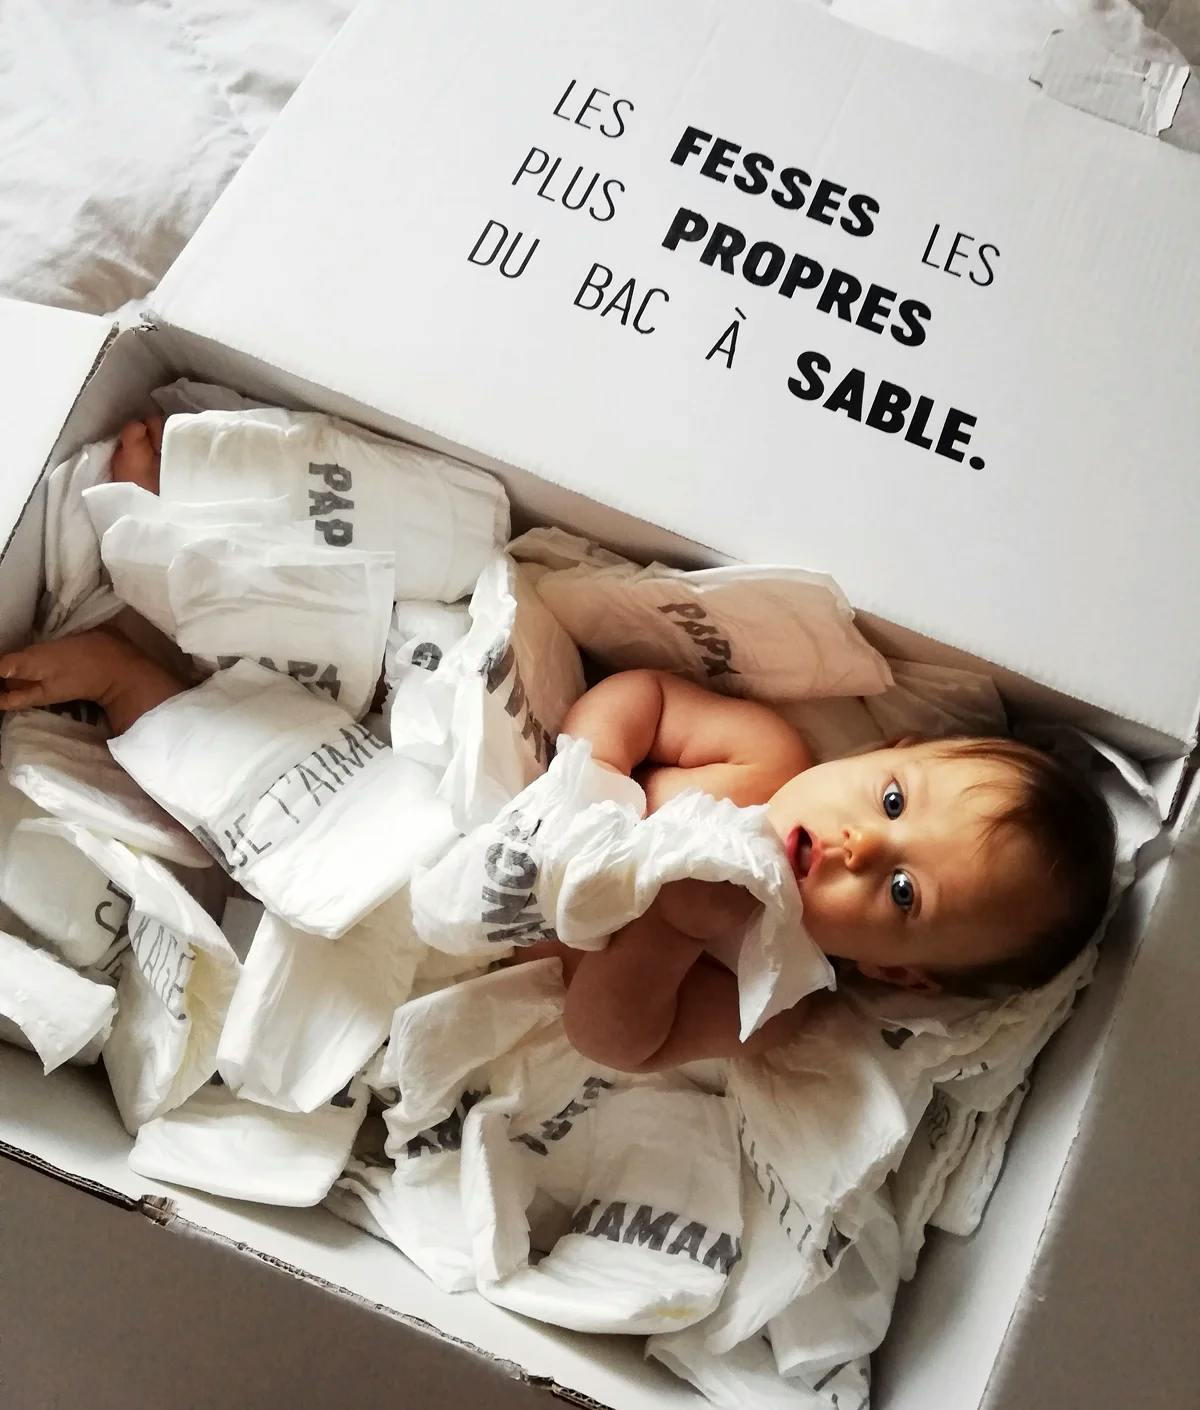 Couche bebe : Achat de couches pour bébé en ligne